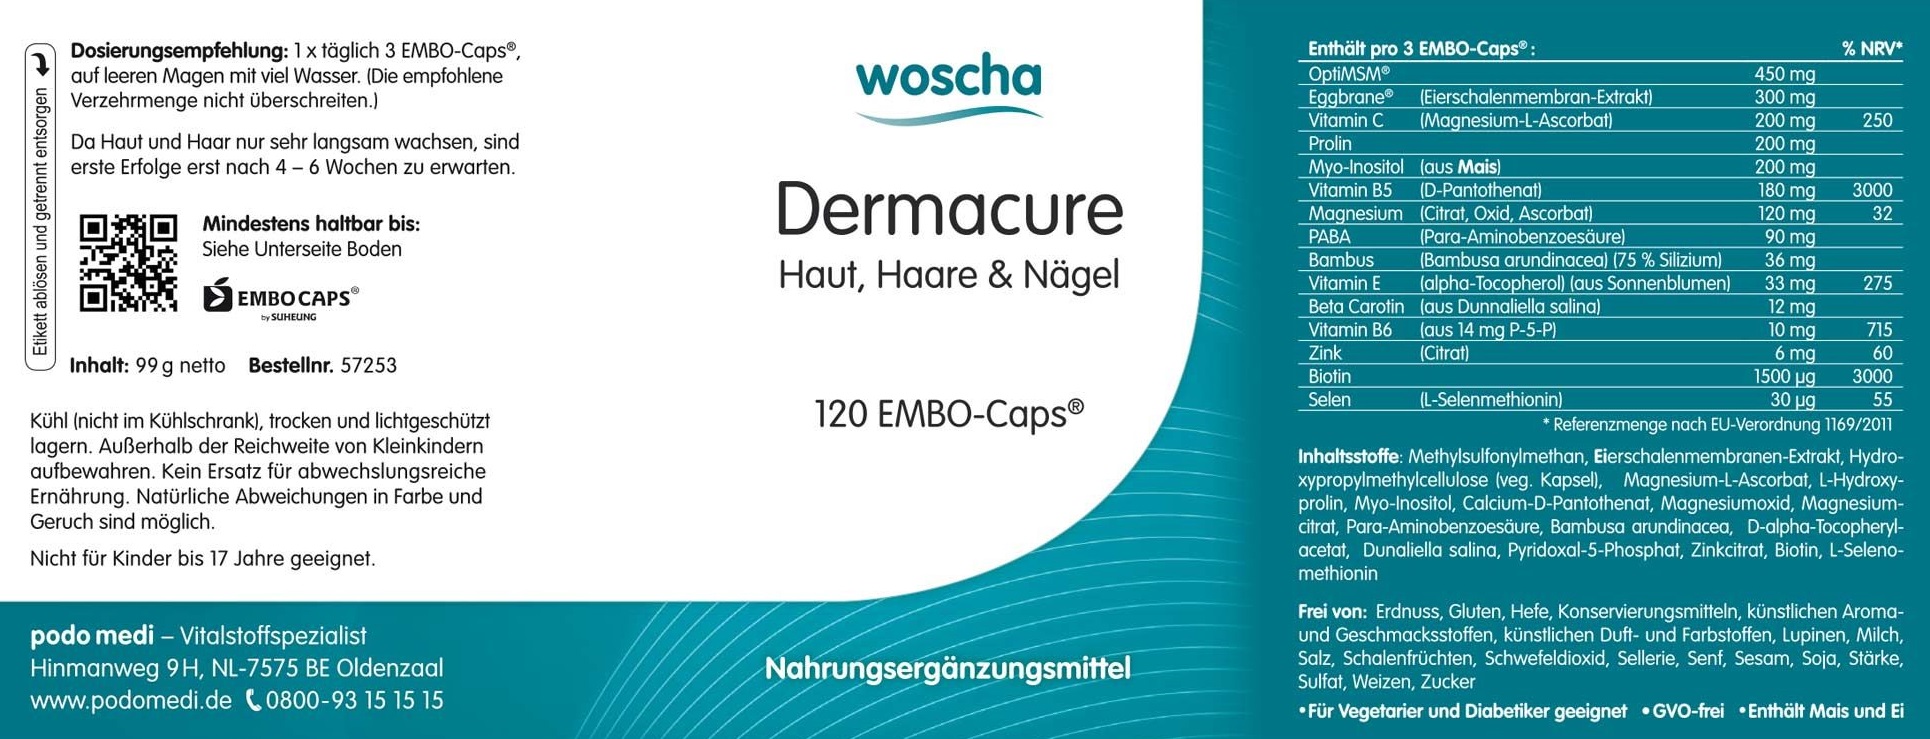 Woscha Dermacure Haut, Haare & Nägel von podo medi beinhaltet 120 Kapseln Etikett